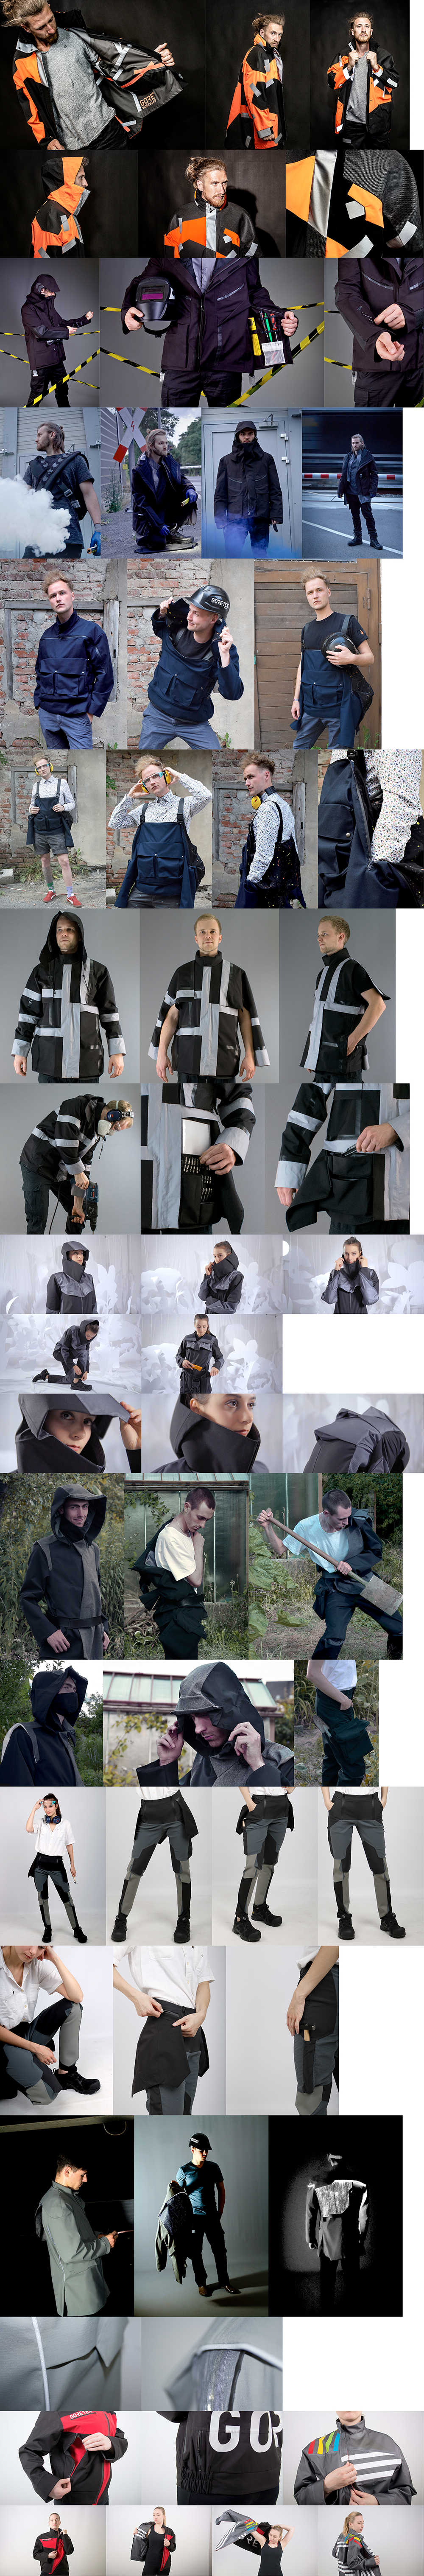 Fotobanner: Zum Thema: Gore - Future Workwear. Models präsentieren die Kollektionen.